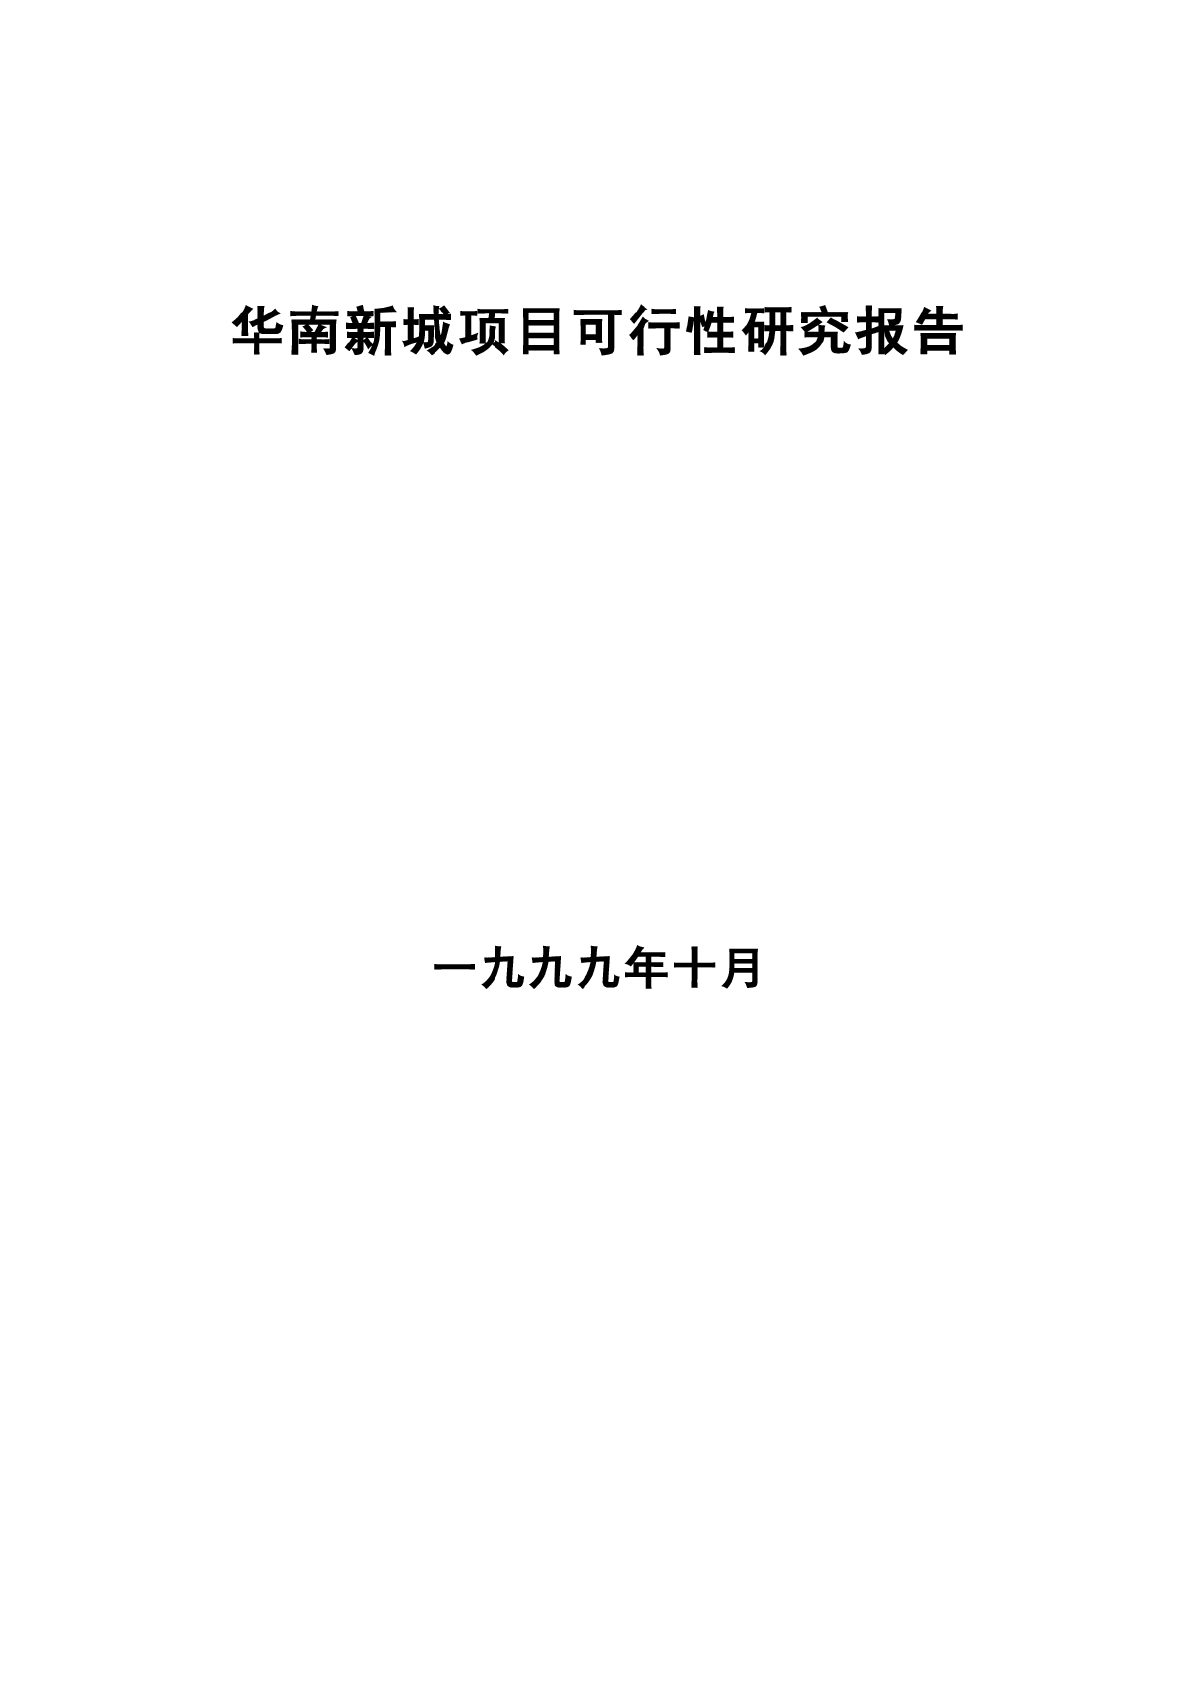 华南新城项目可行性研究报告-图一